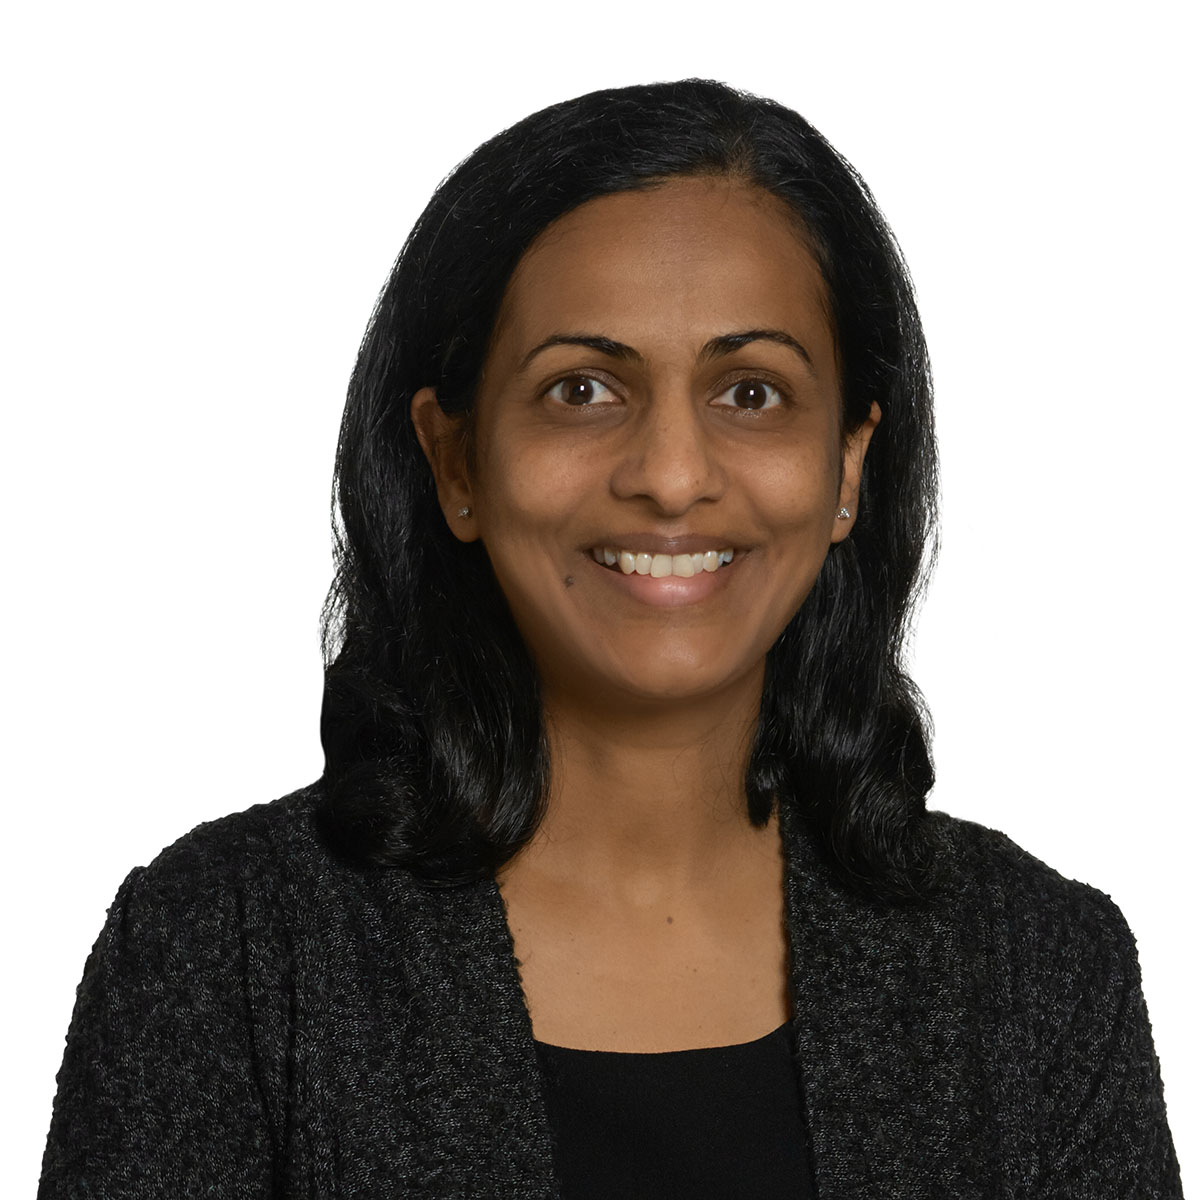 Headshot of Dr. Swapna Chennareddygari